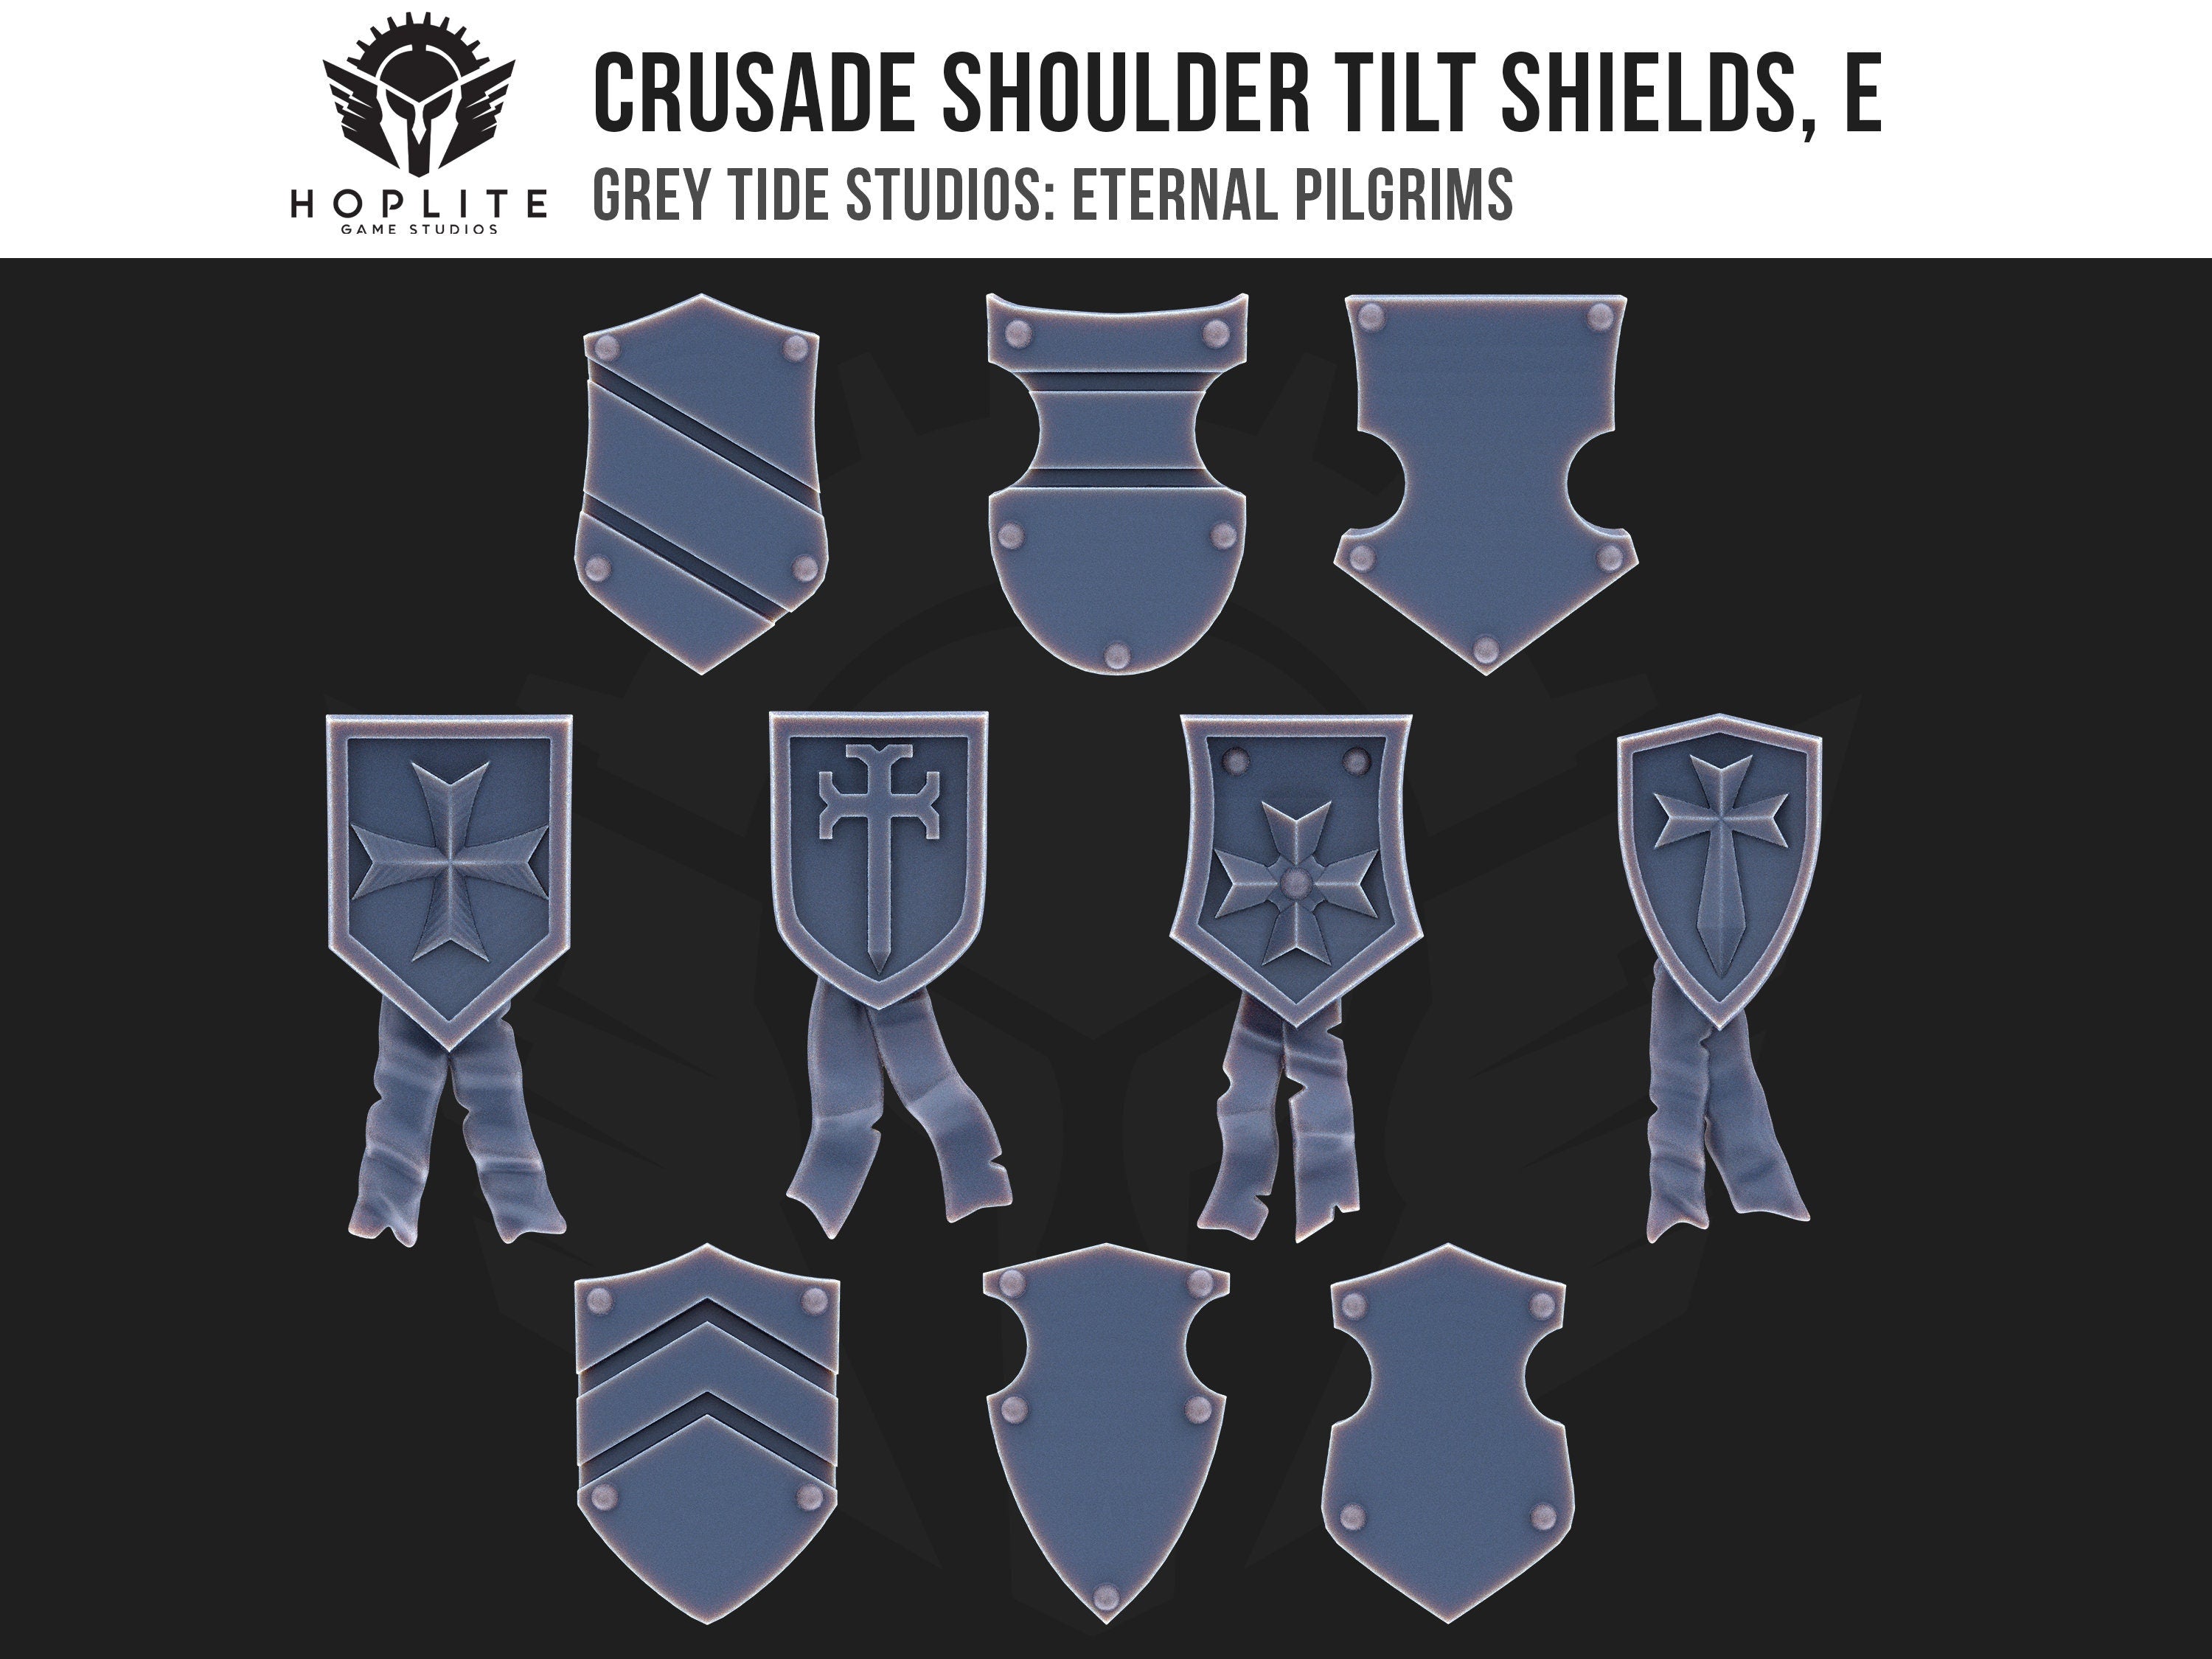 Escudos de inclinación de hombros de Cruzada, E (x10) | Estudios de marea gris | Peregrinos eternos | Piezas y brocas de conversión